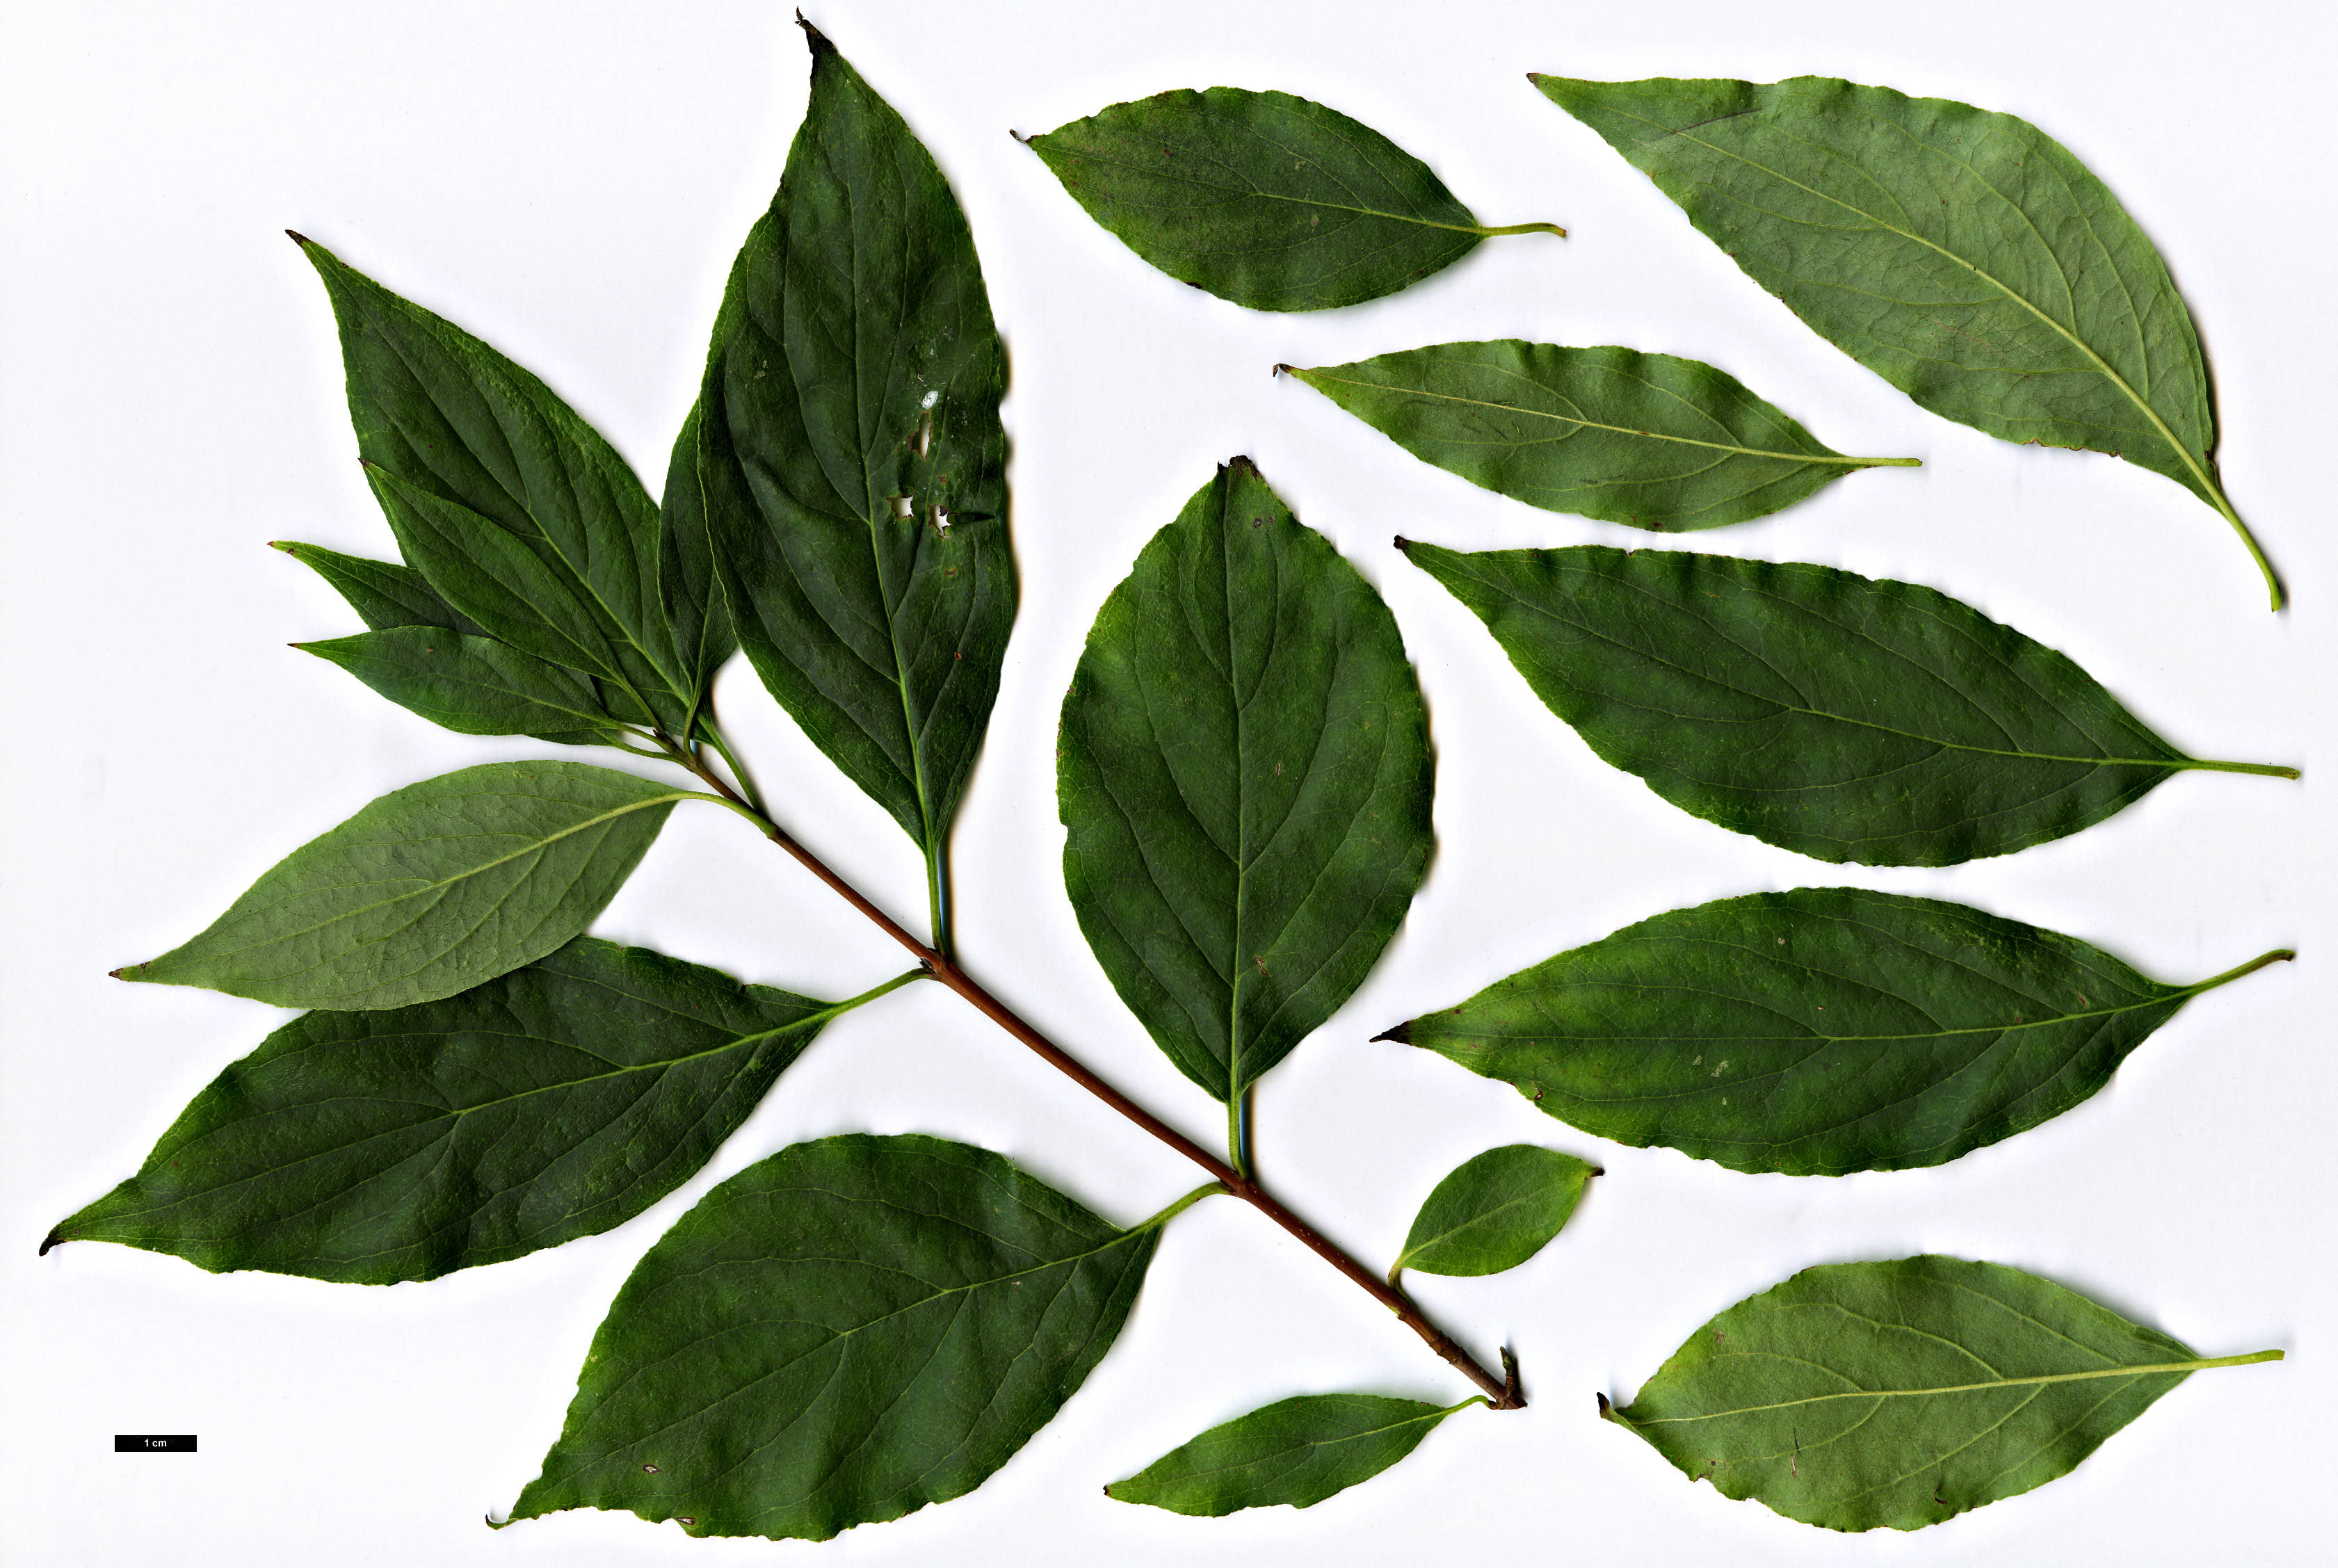 High resolution image: Family: Cornaceae - Genus: Cornus - Taxon: ×arnoldiana (C.obliqua × C.racemosa)